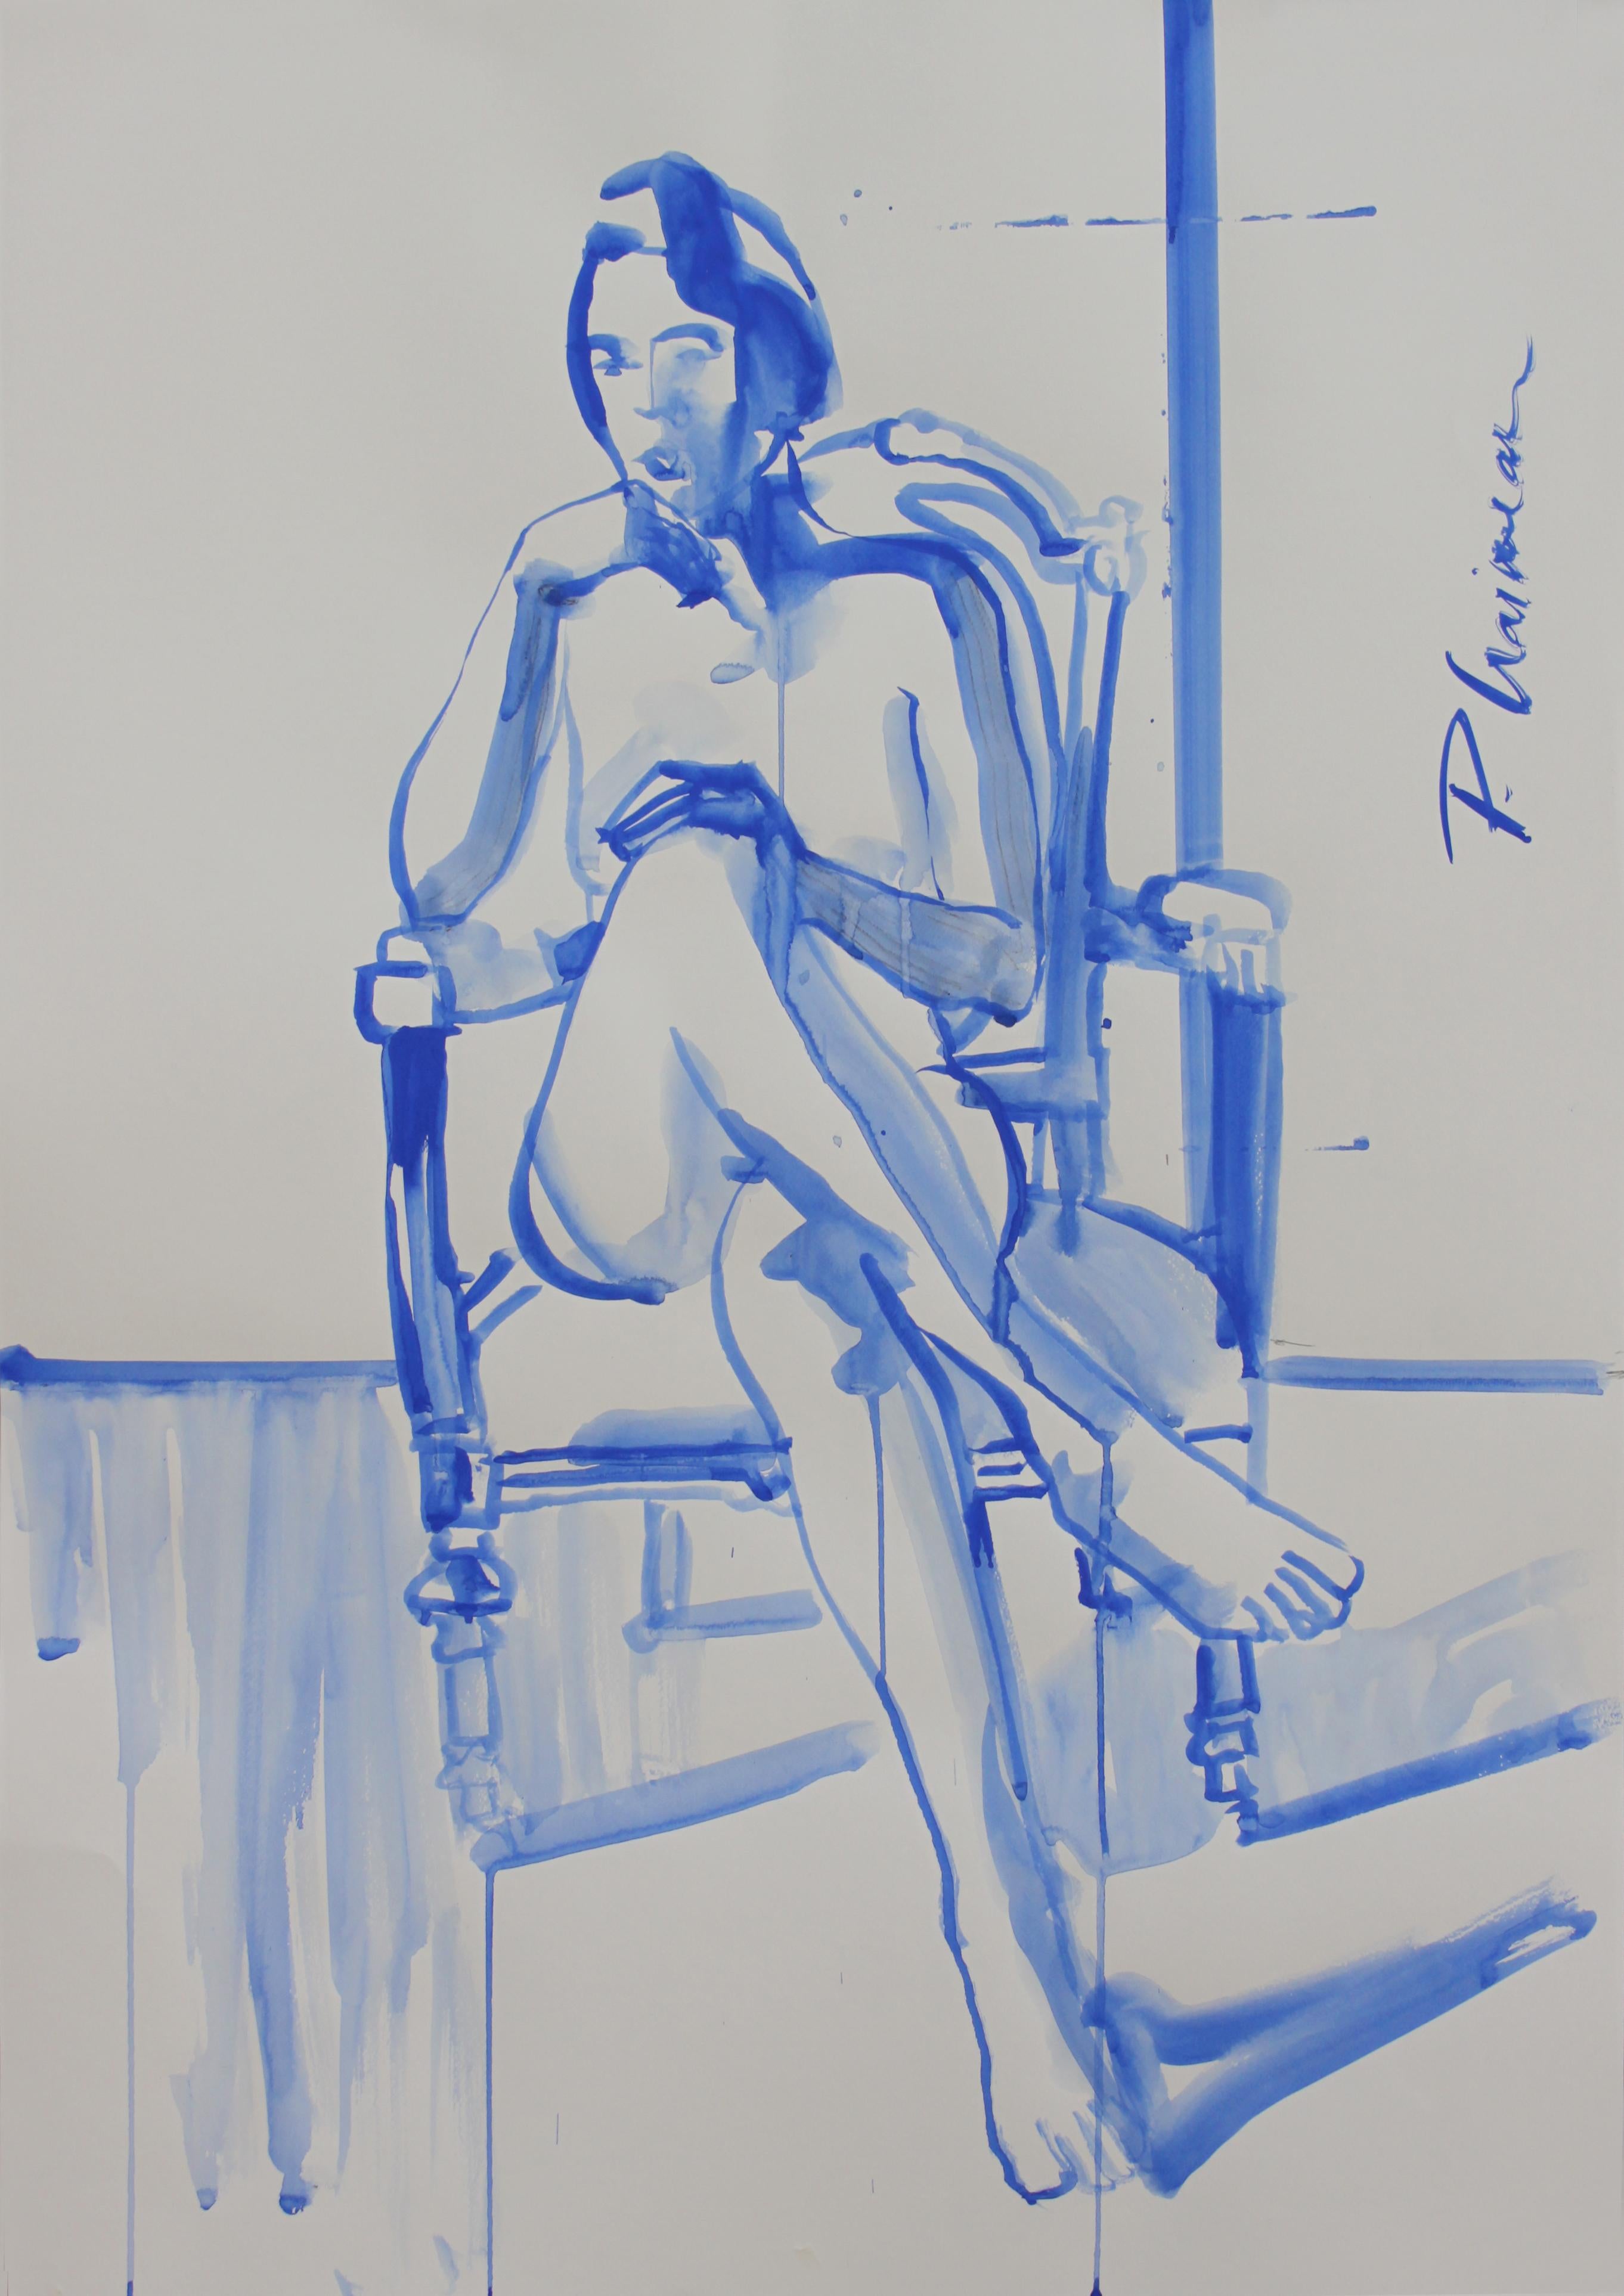 "Stille", Bleistift und ultramarinblaue Tempera auf Papier, inspiriert von Matisse.
Teil der Serie Nude in Interior.

Große Zeichnung. Wird in einer Rolle direkt aus dem Studio des Künstlers geliefert.
Größe  39x27.5in  /100x70cm

Künstlerisches